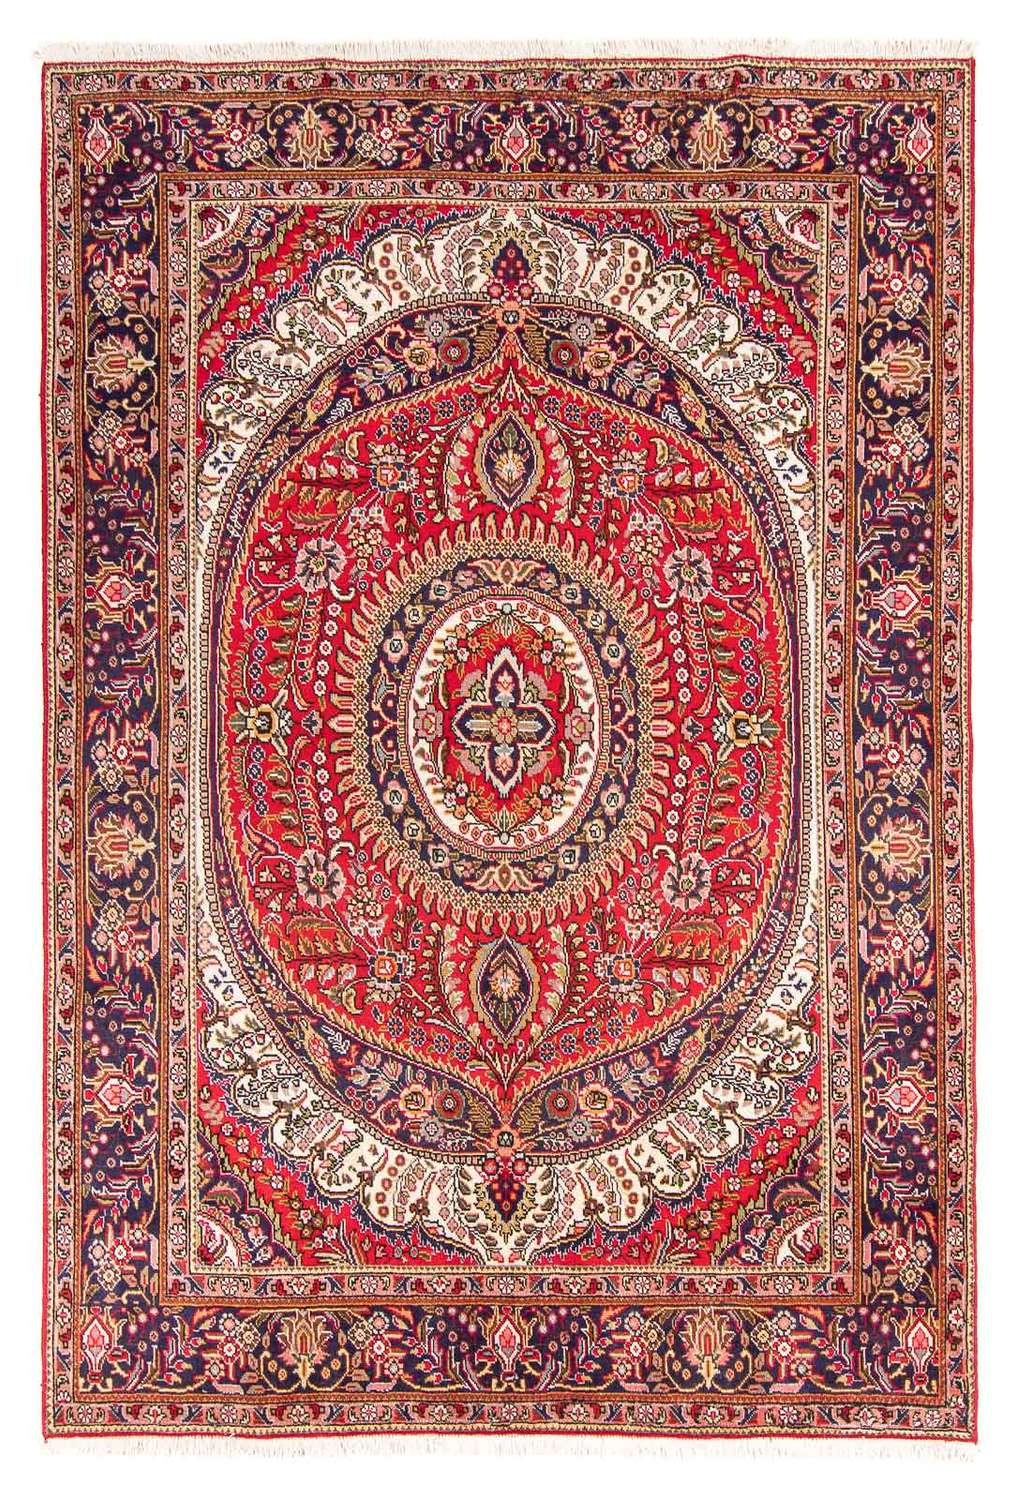 Persisk tæppe - Tabriz - 300 x 205 cm - rød